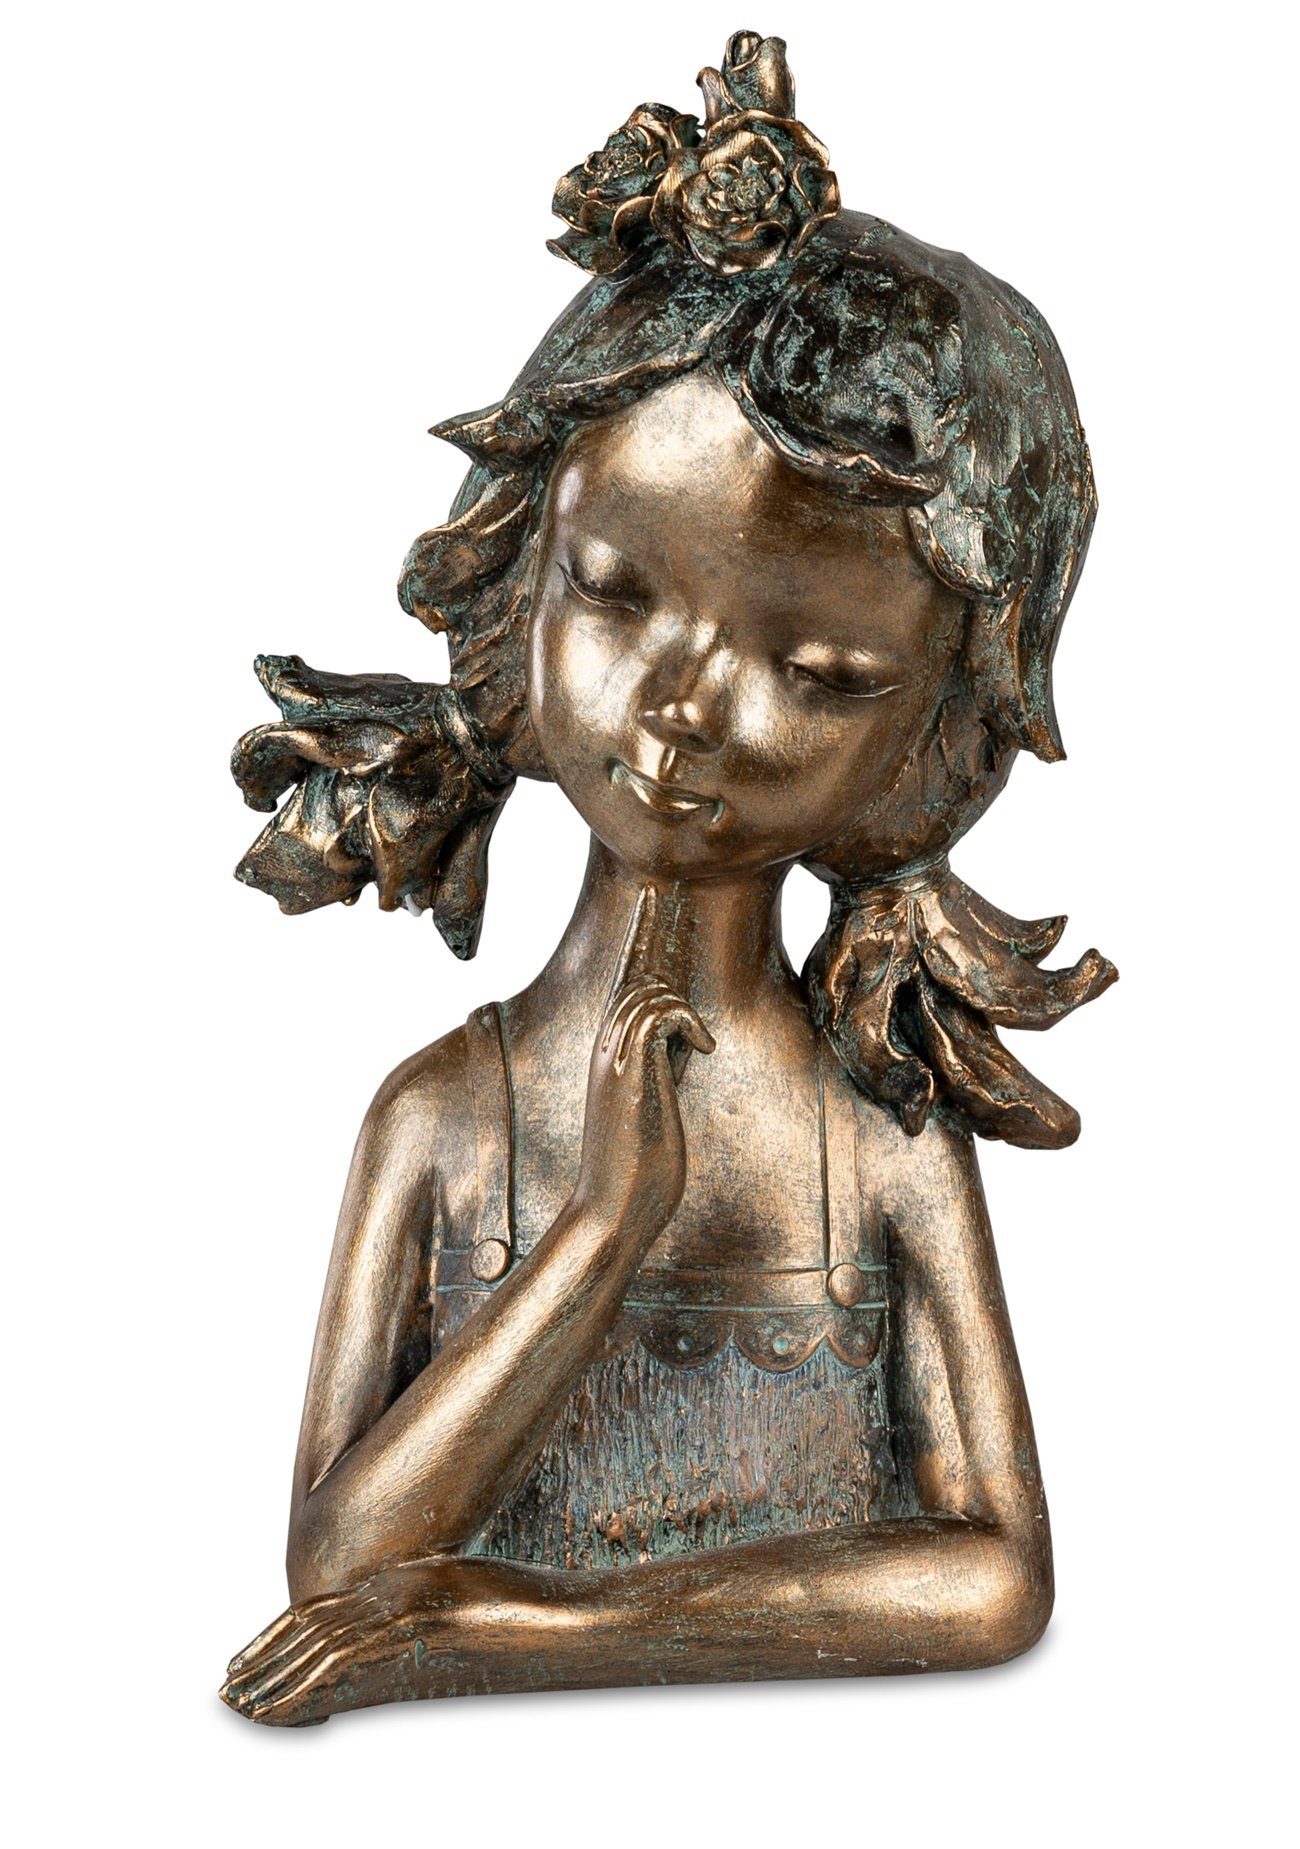 dekojohnson Dekofigur exklusive Deko-Büste-Mädchen bronzefarben 27cm